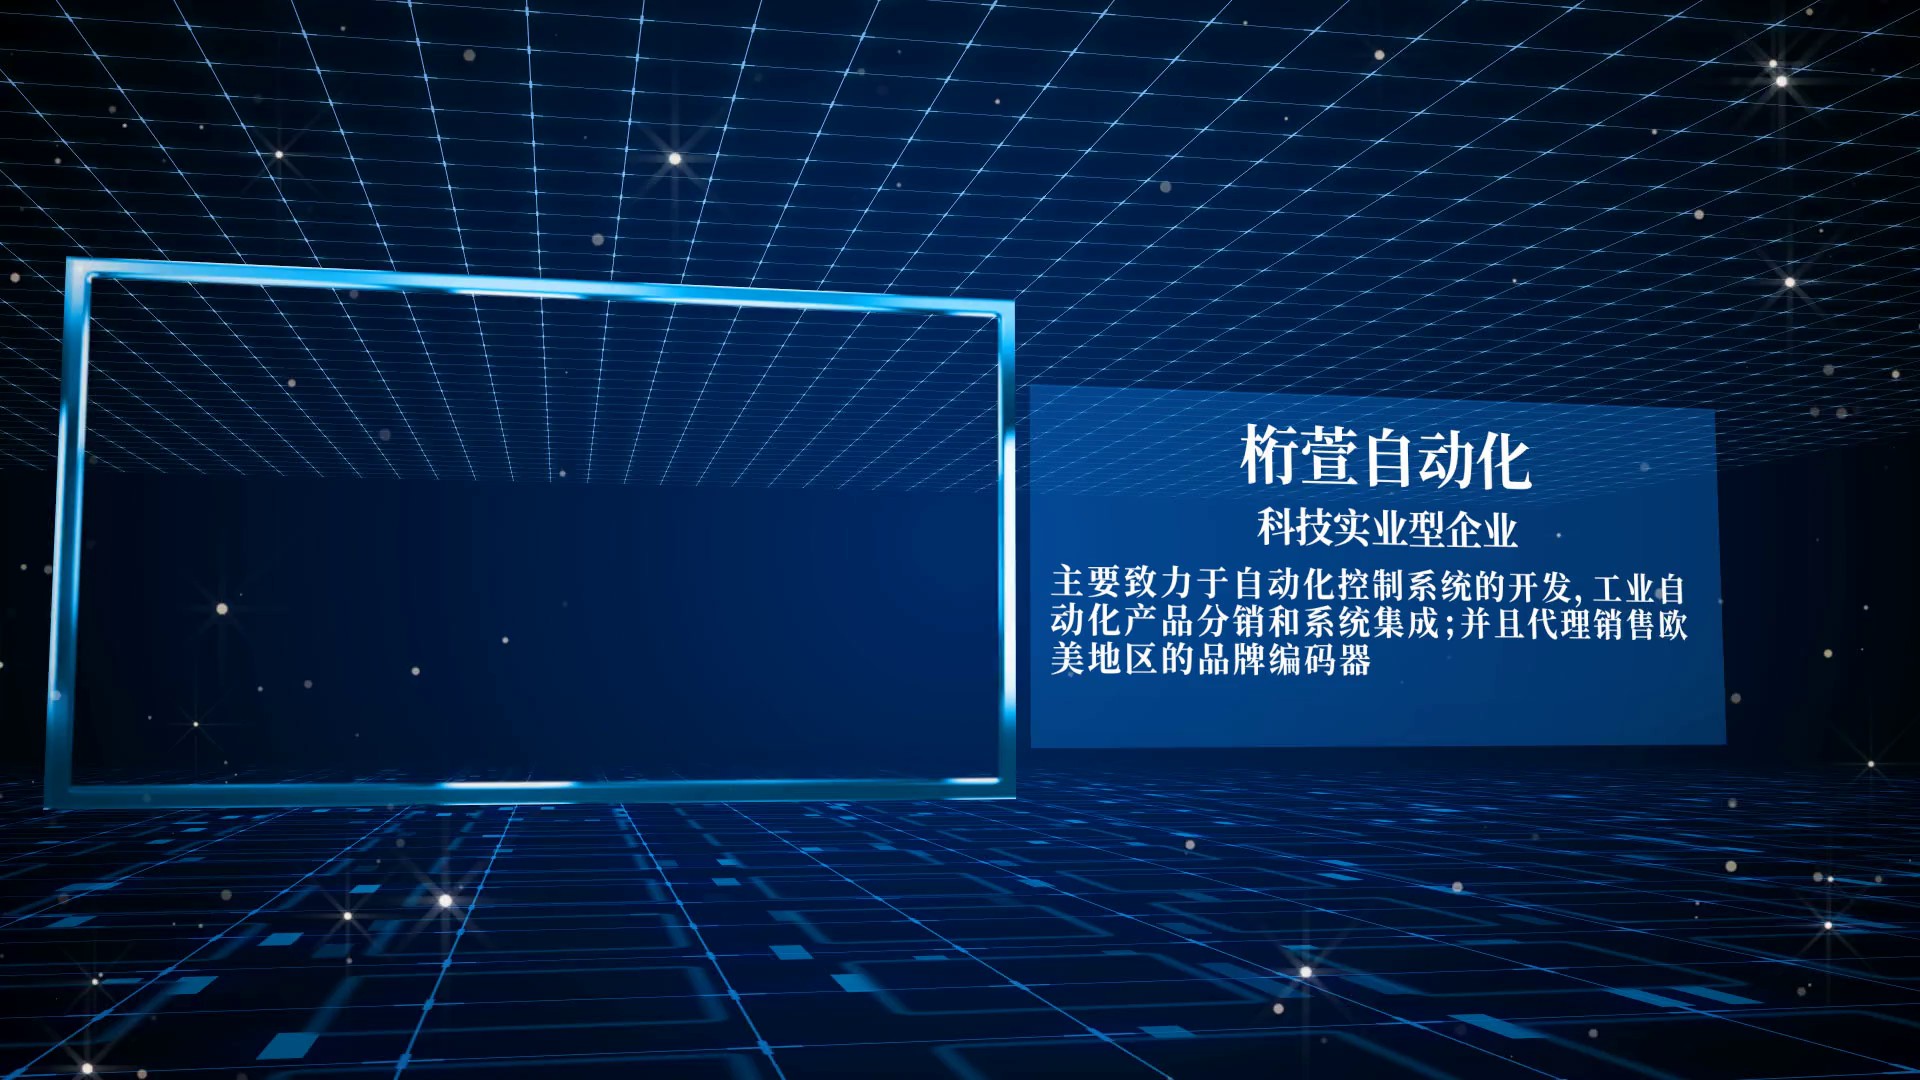 上海单圈0-5V光电绝对值编码器厂家,光电单圈编码器